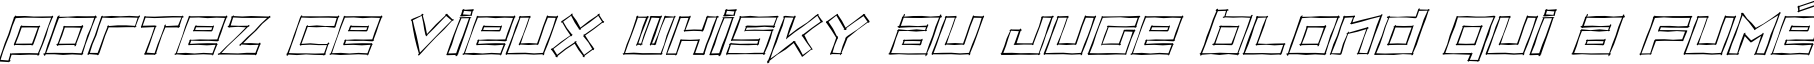 Пример написания шрифтом ZipSonikSketch-Italic текста на французском